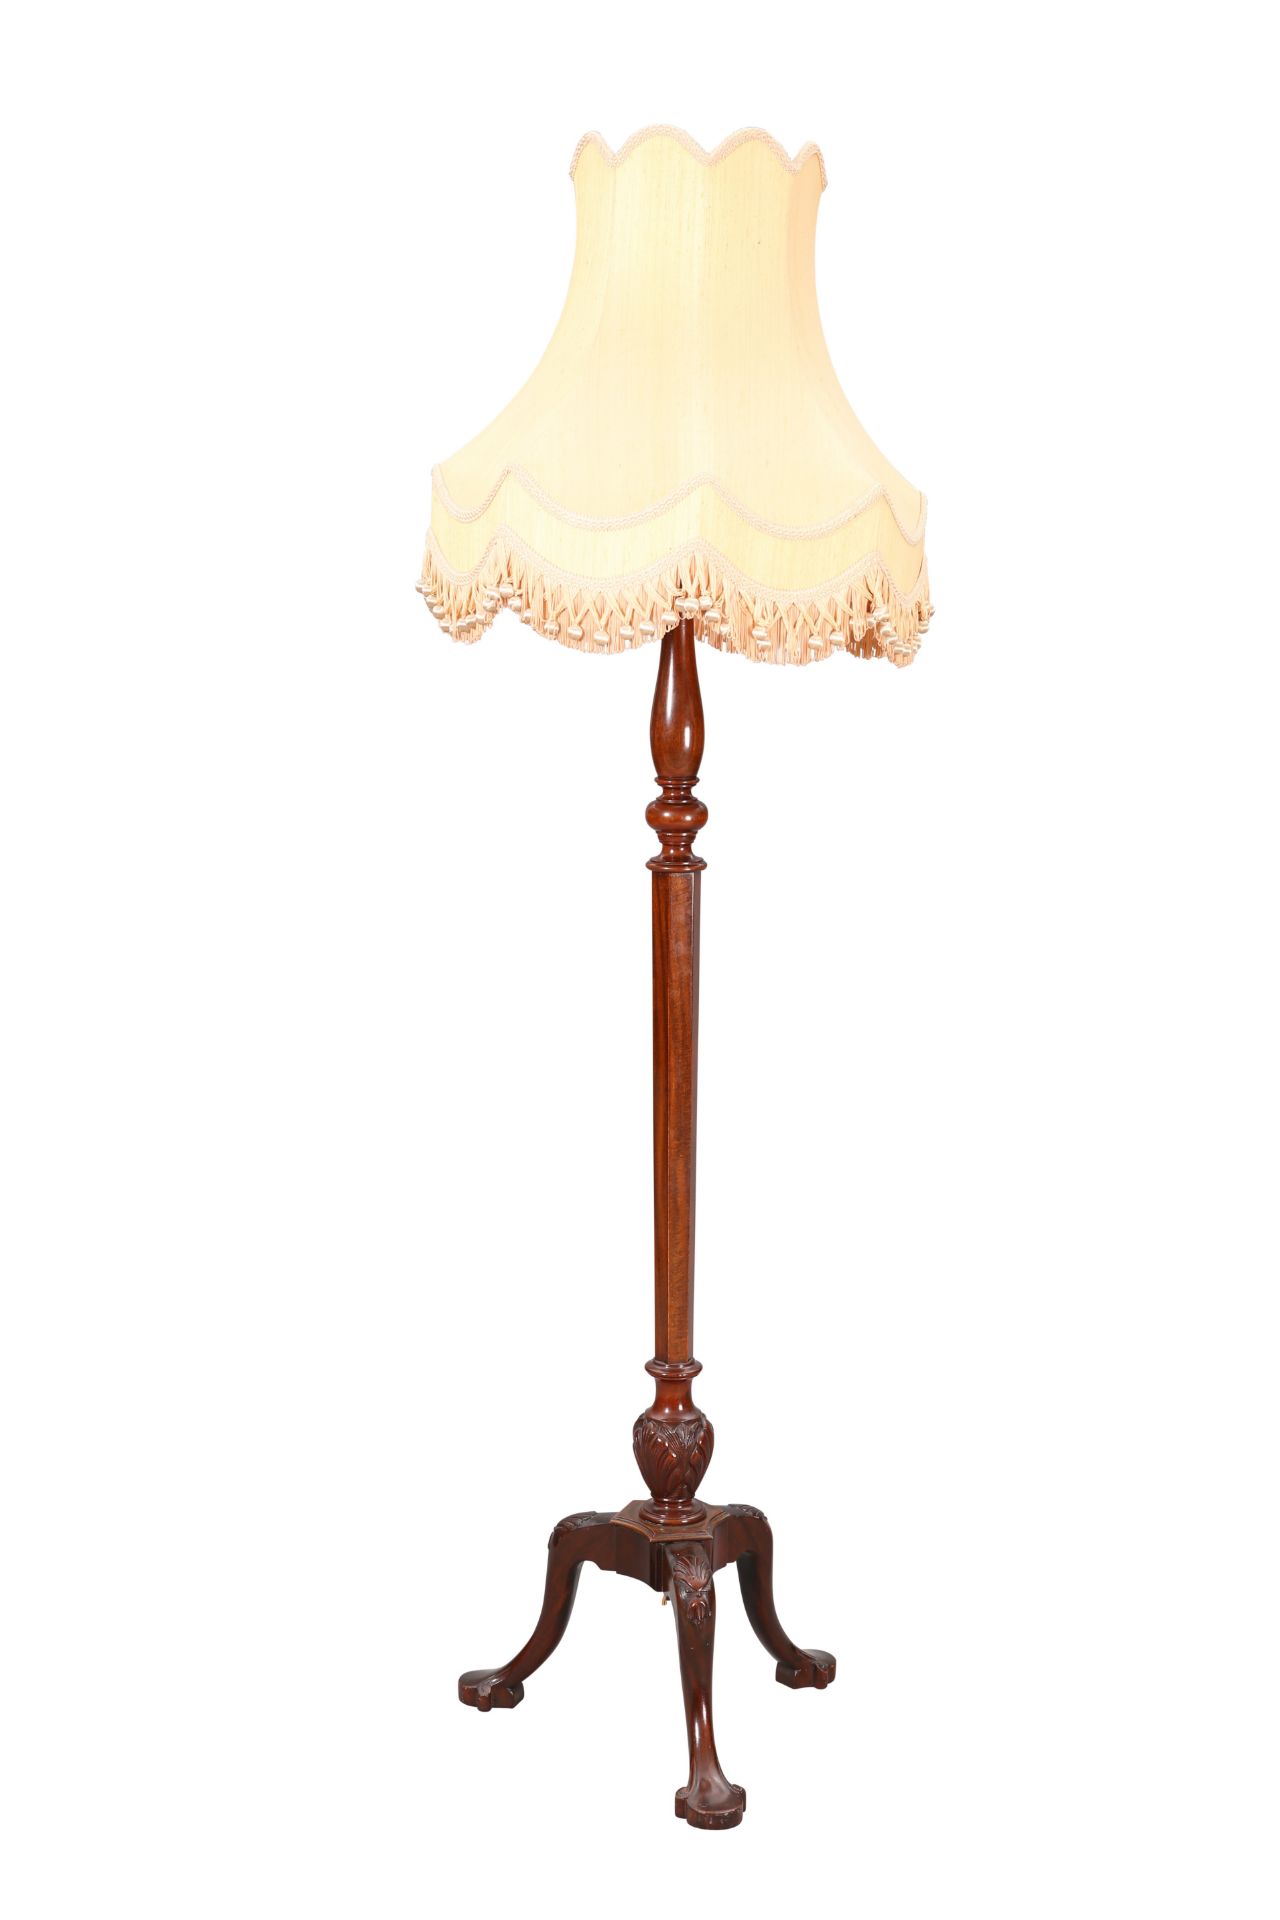 A GEORGIAN STYLE MAHOGANY STANDARD LAMP